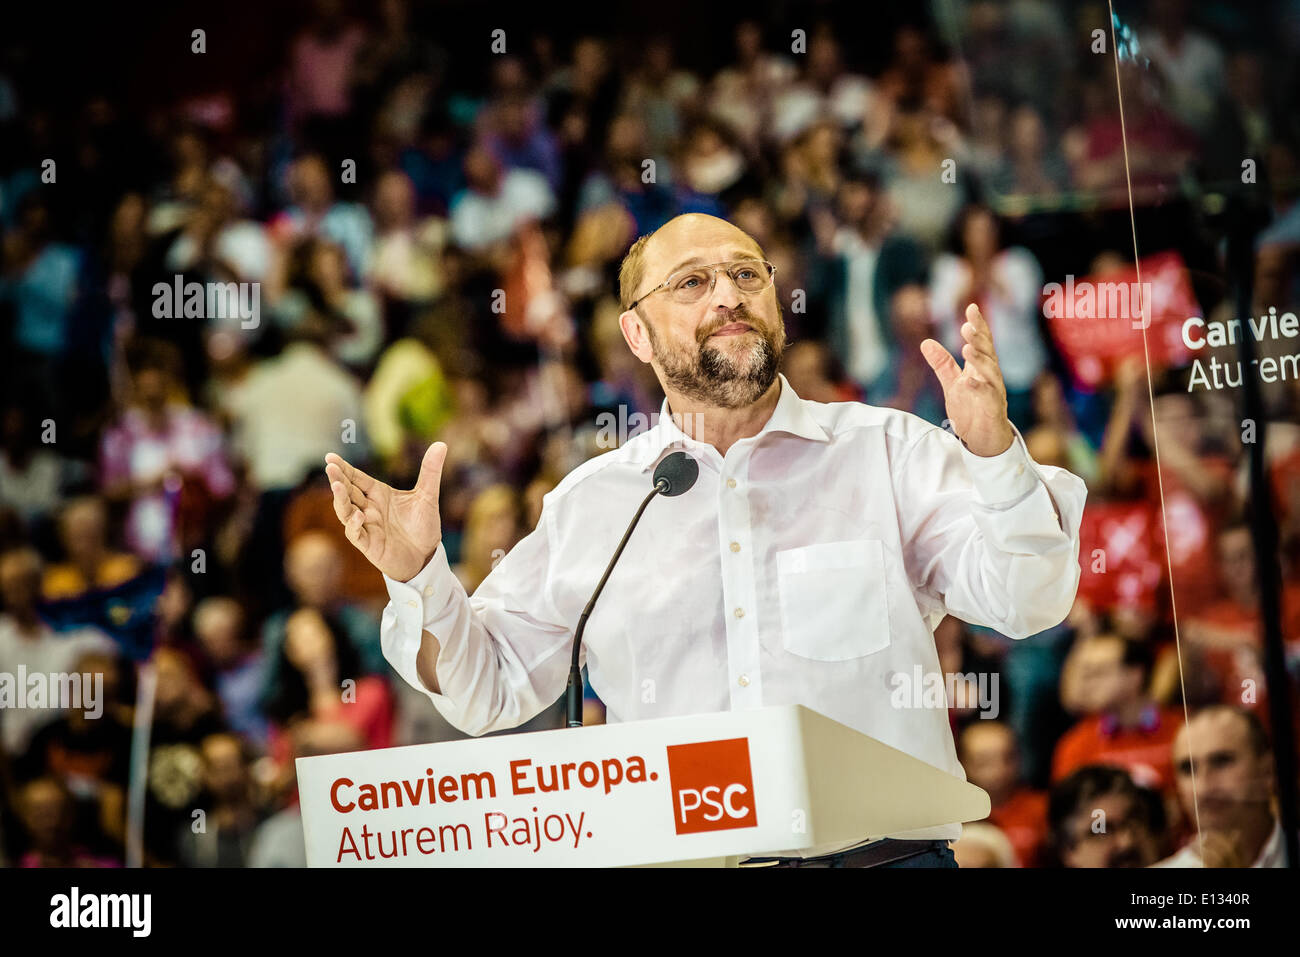 Barcellona, Spagna. 21 maggio 2014: Martin Schulz, Presidente del Parlamento europeo e in esecuzione per la presidenza della Commissione Europea parla presso la centrale di elezione riunione della PSC in Barcellona Credito: matthi/Alamy Live News Foto Stock